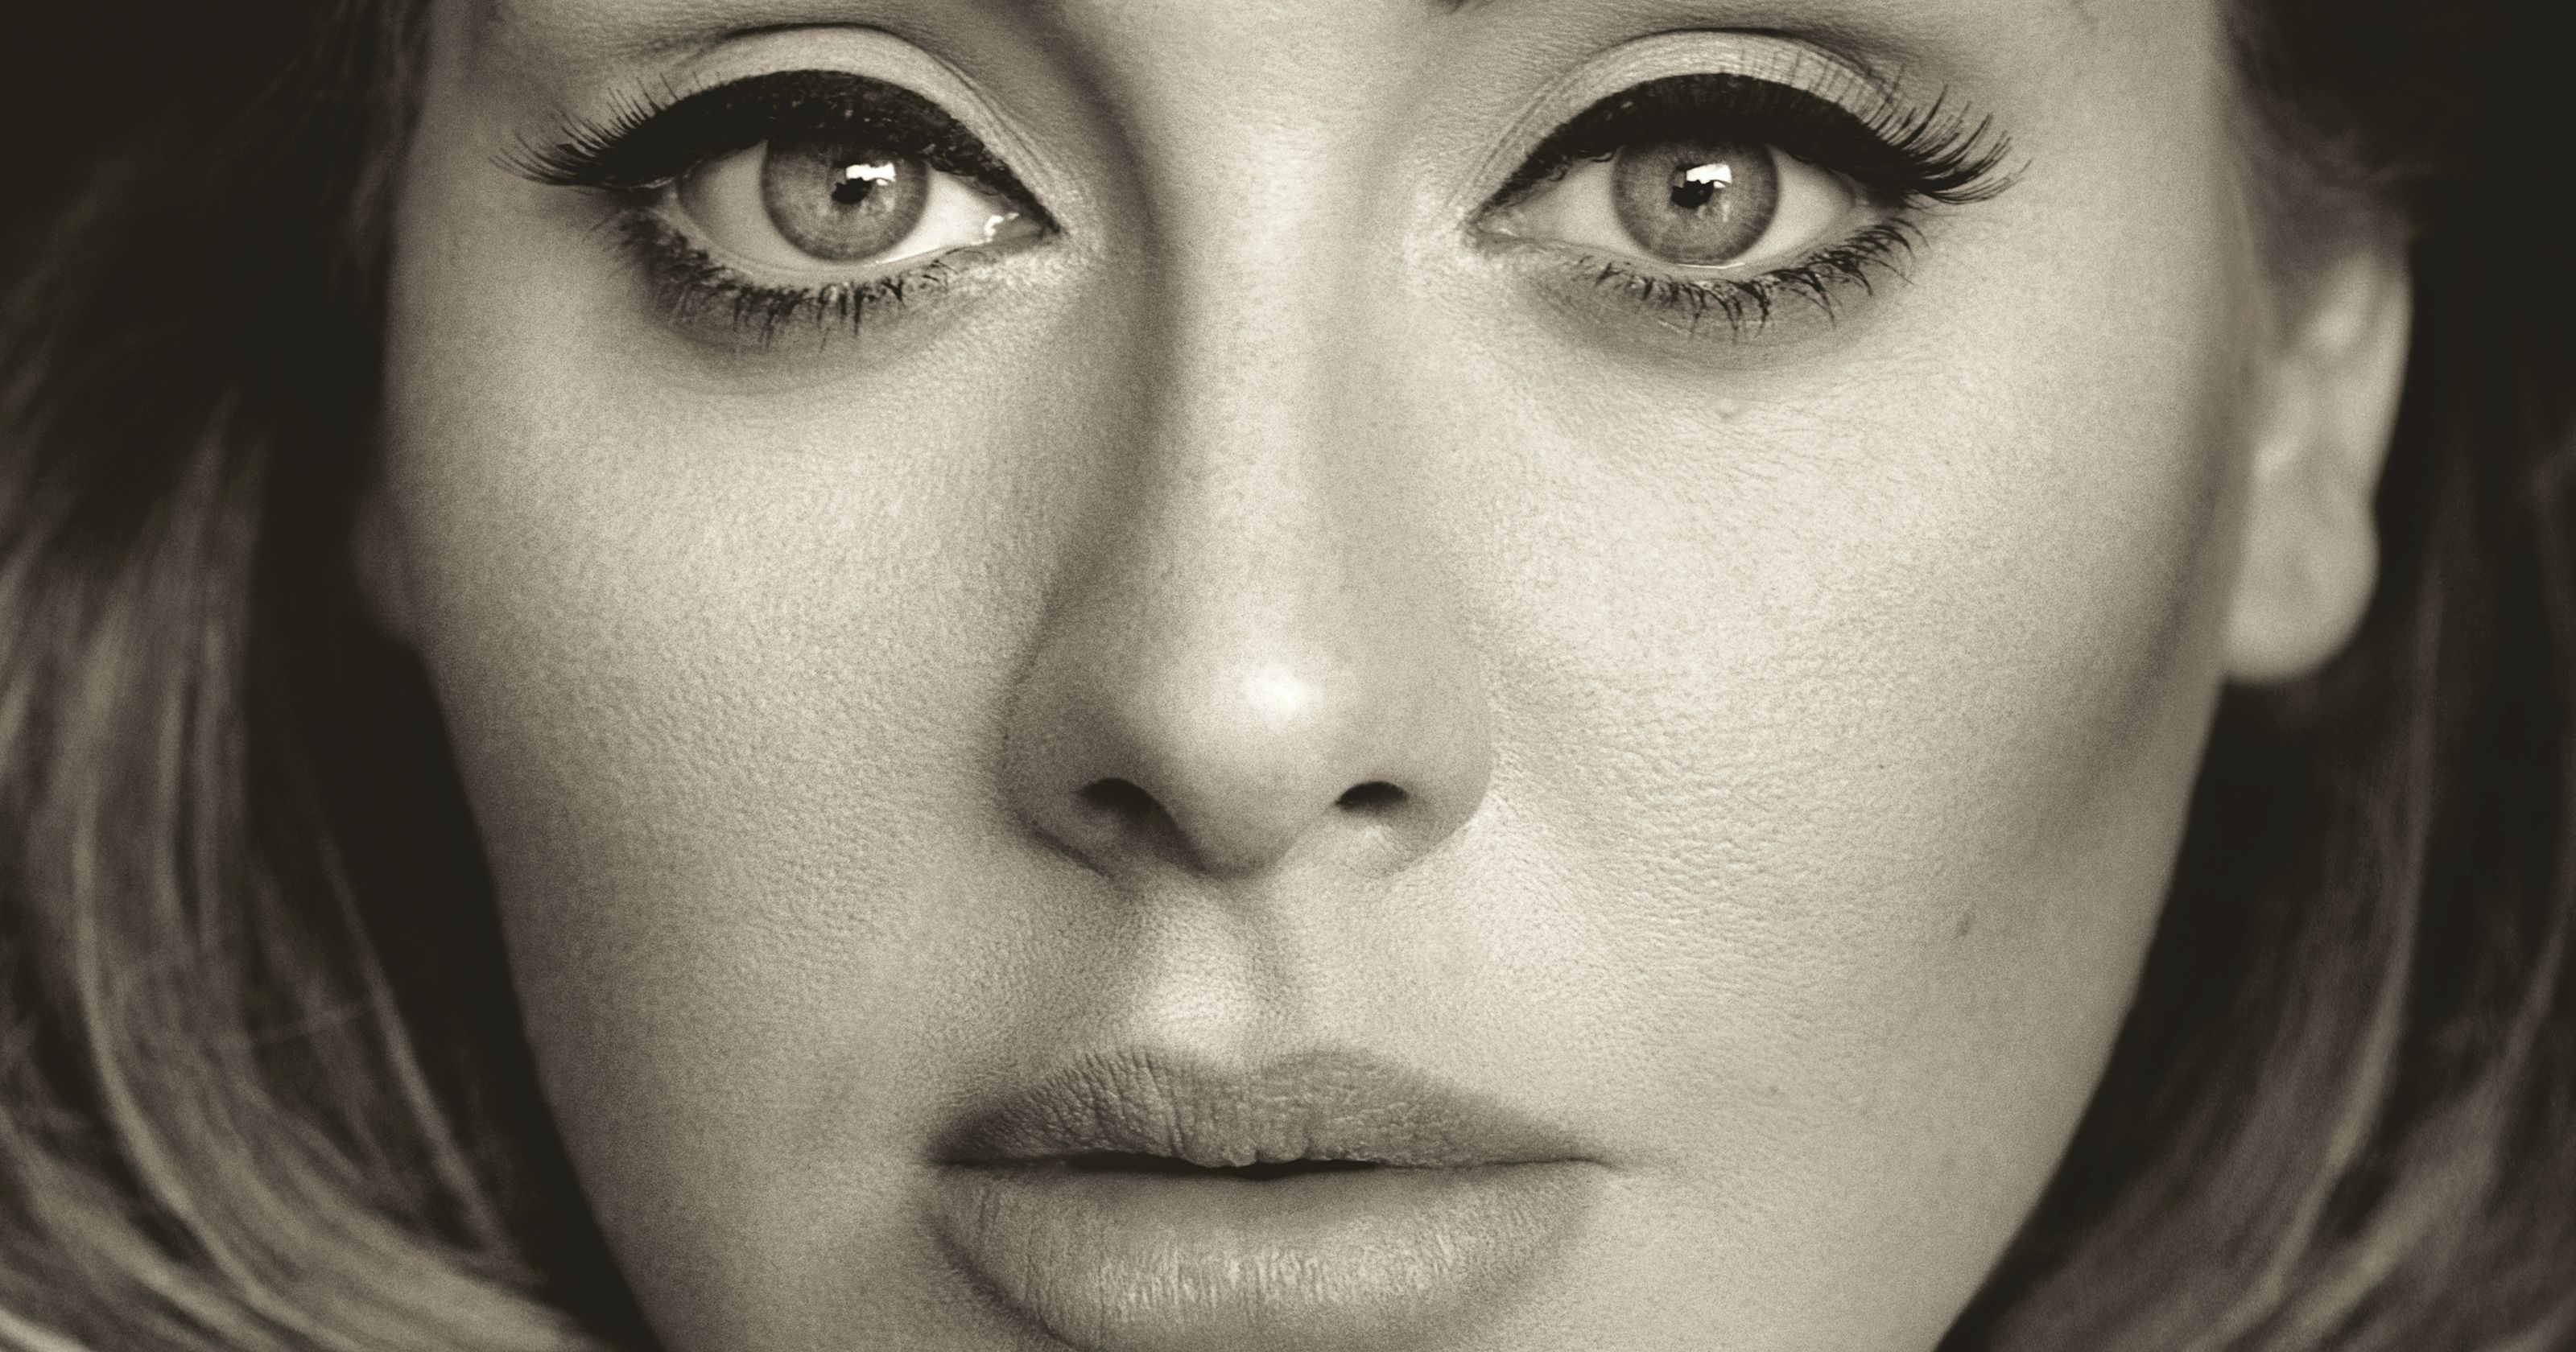 Adele’s “25” entire album in 4 minutes